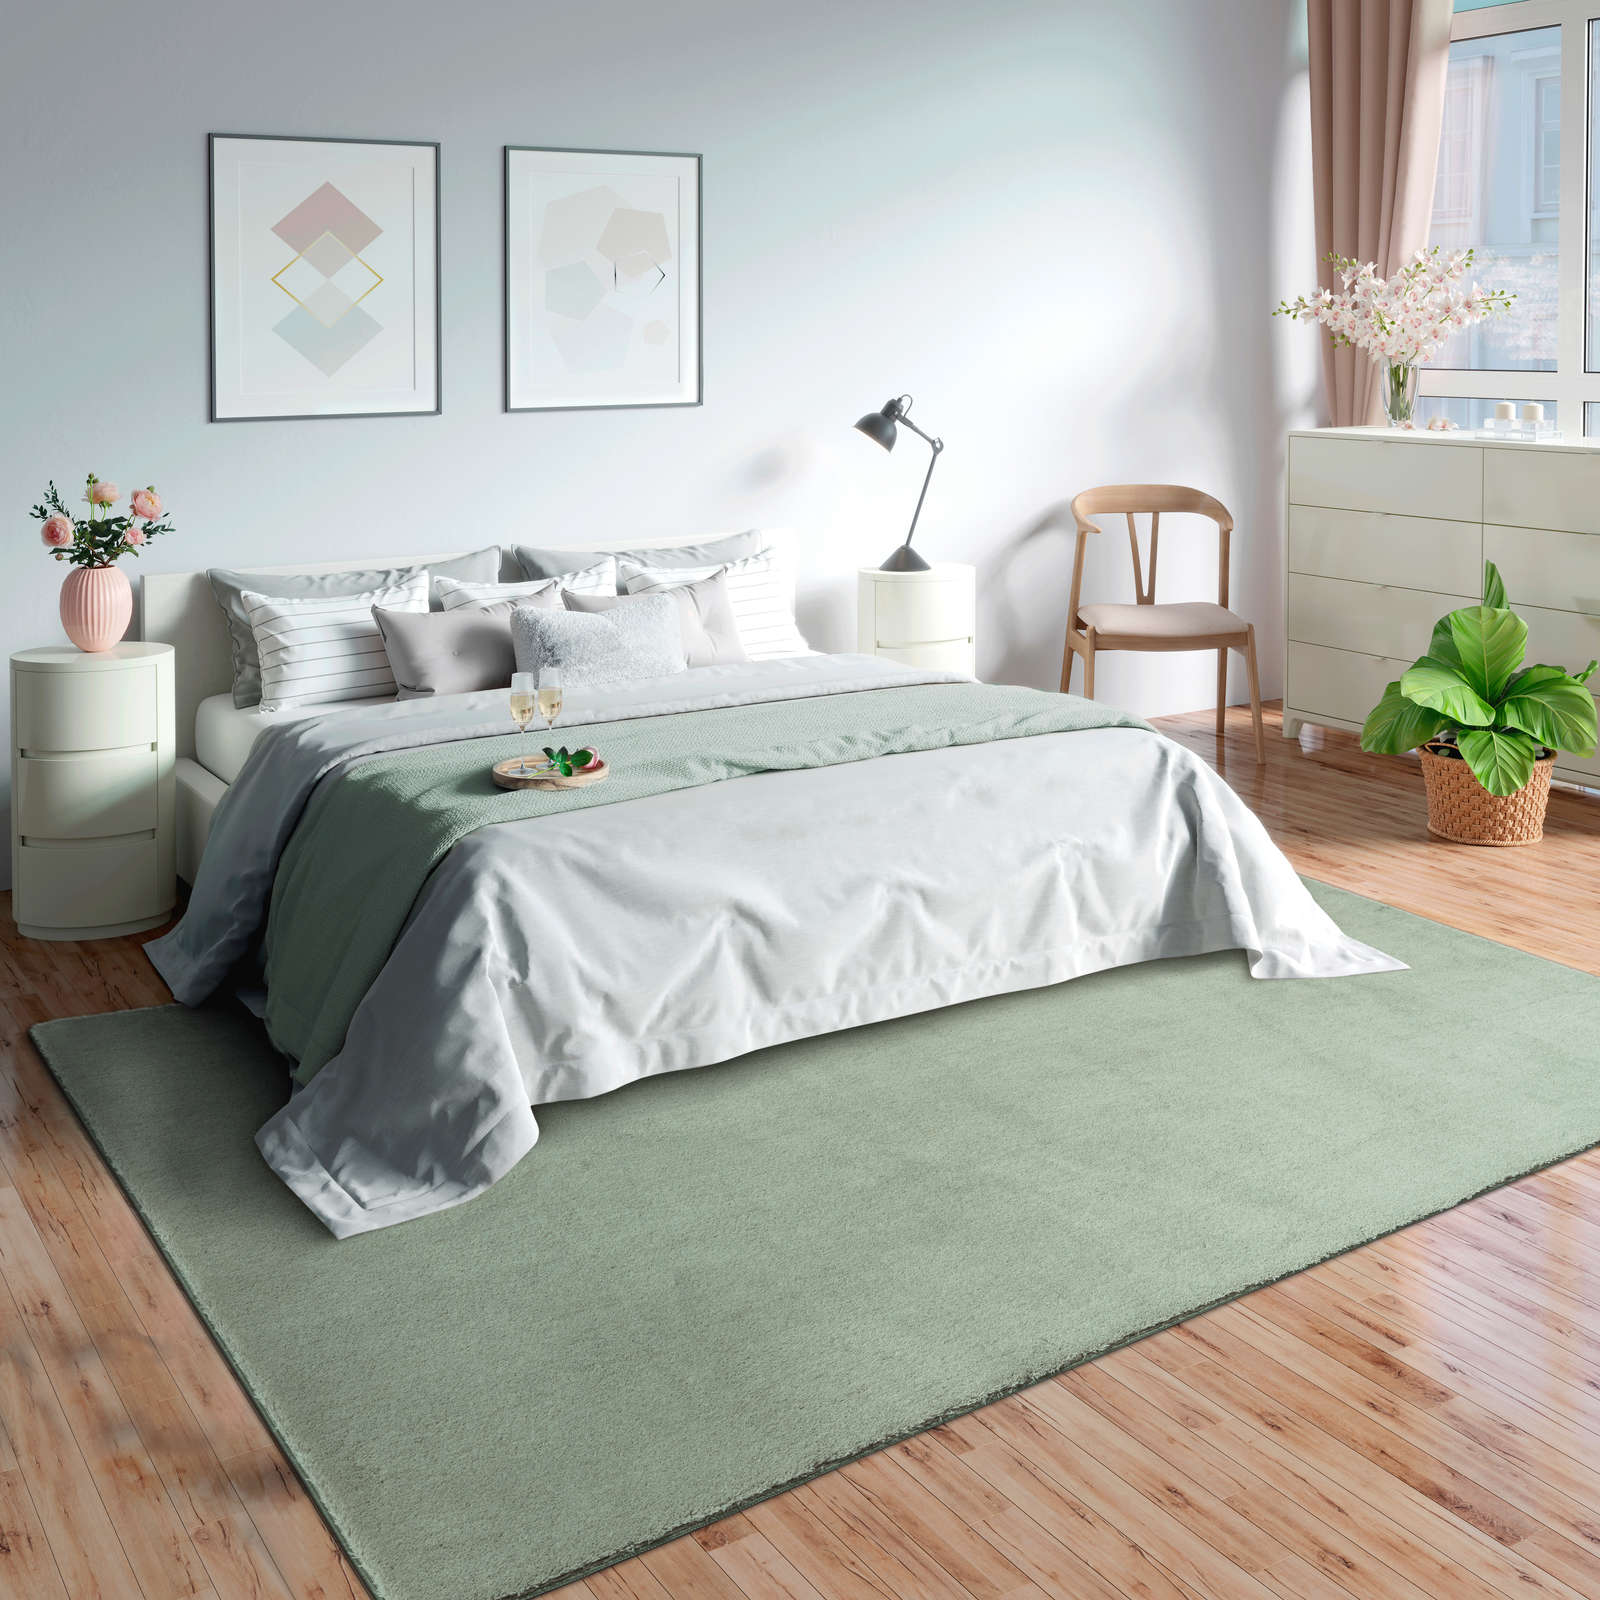             Zacht hoogpolig tapijt in groen - 290 x 200 cm
        